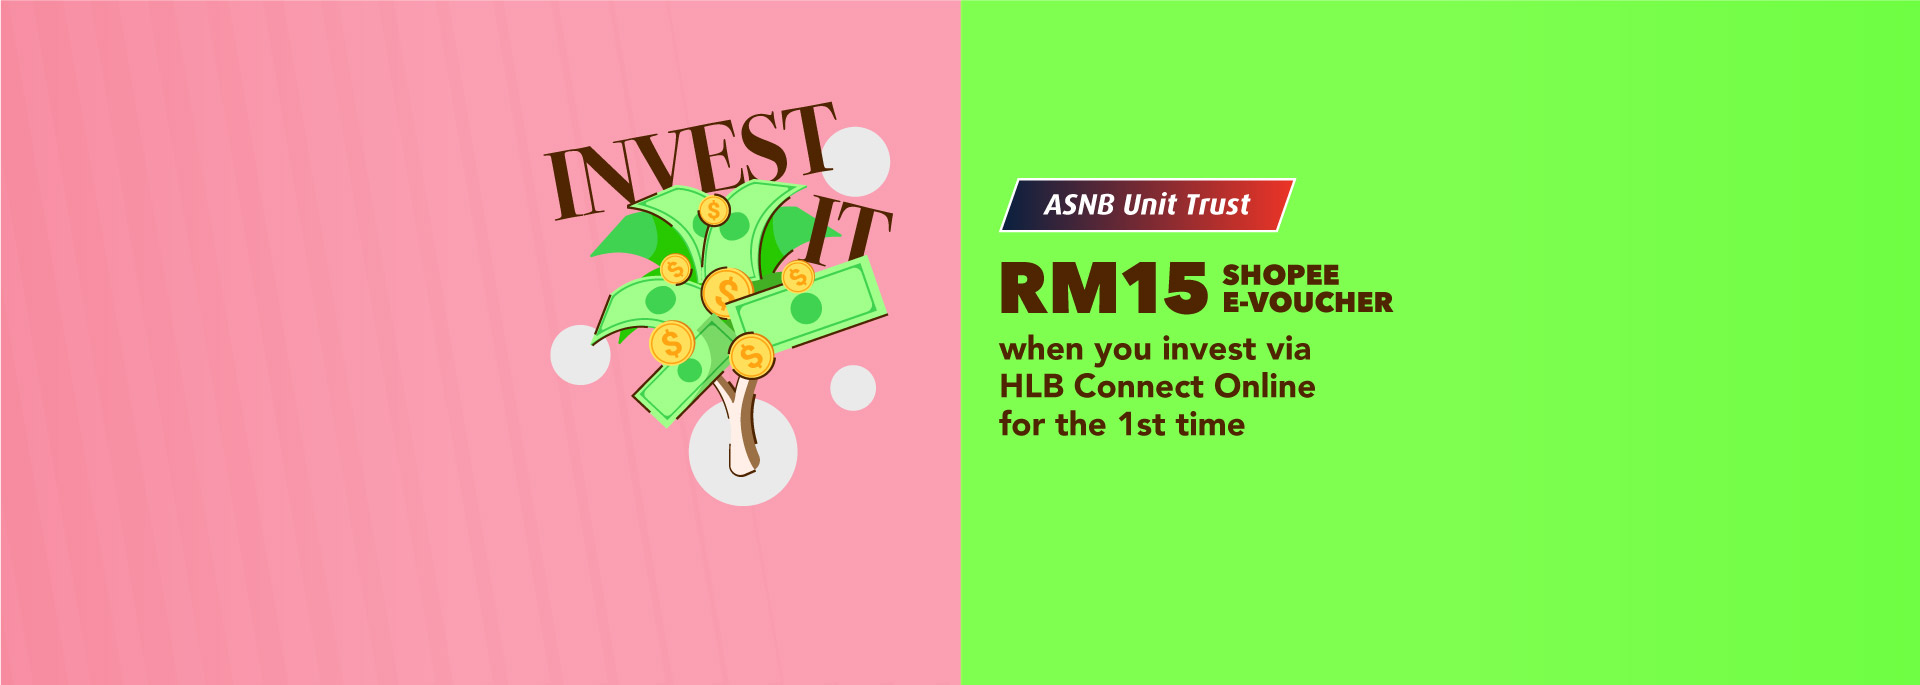 ASNB Unit Trust - Get your RM15 Shopee e-Voucher